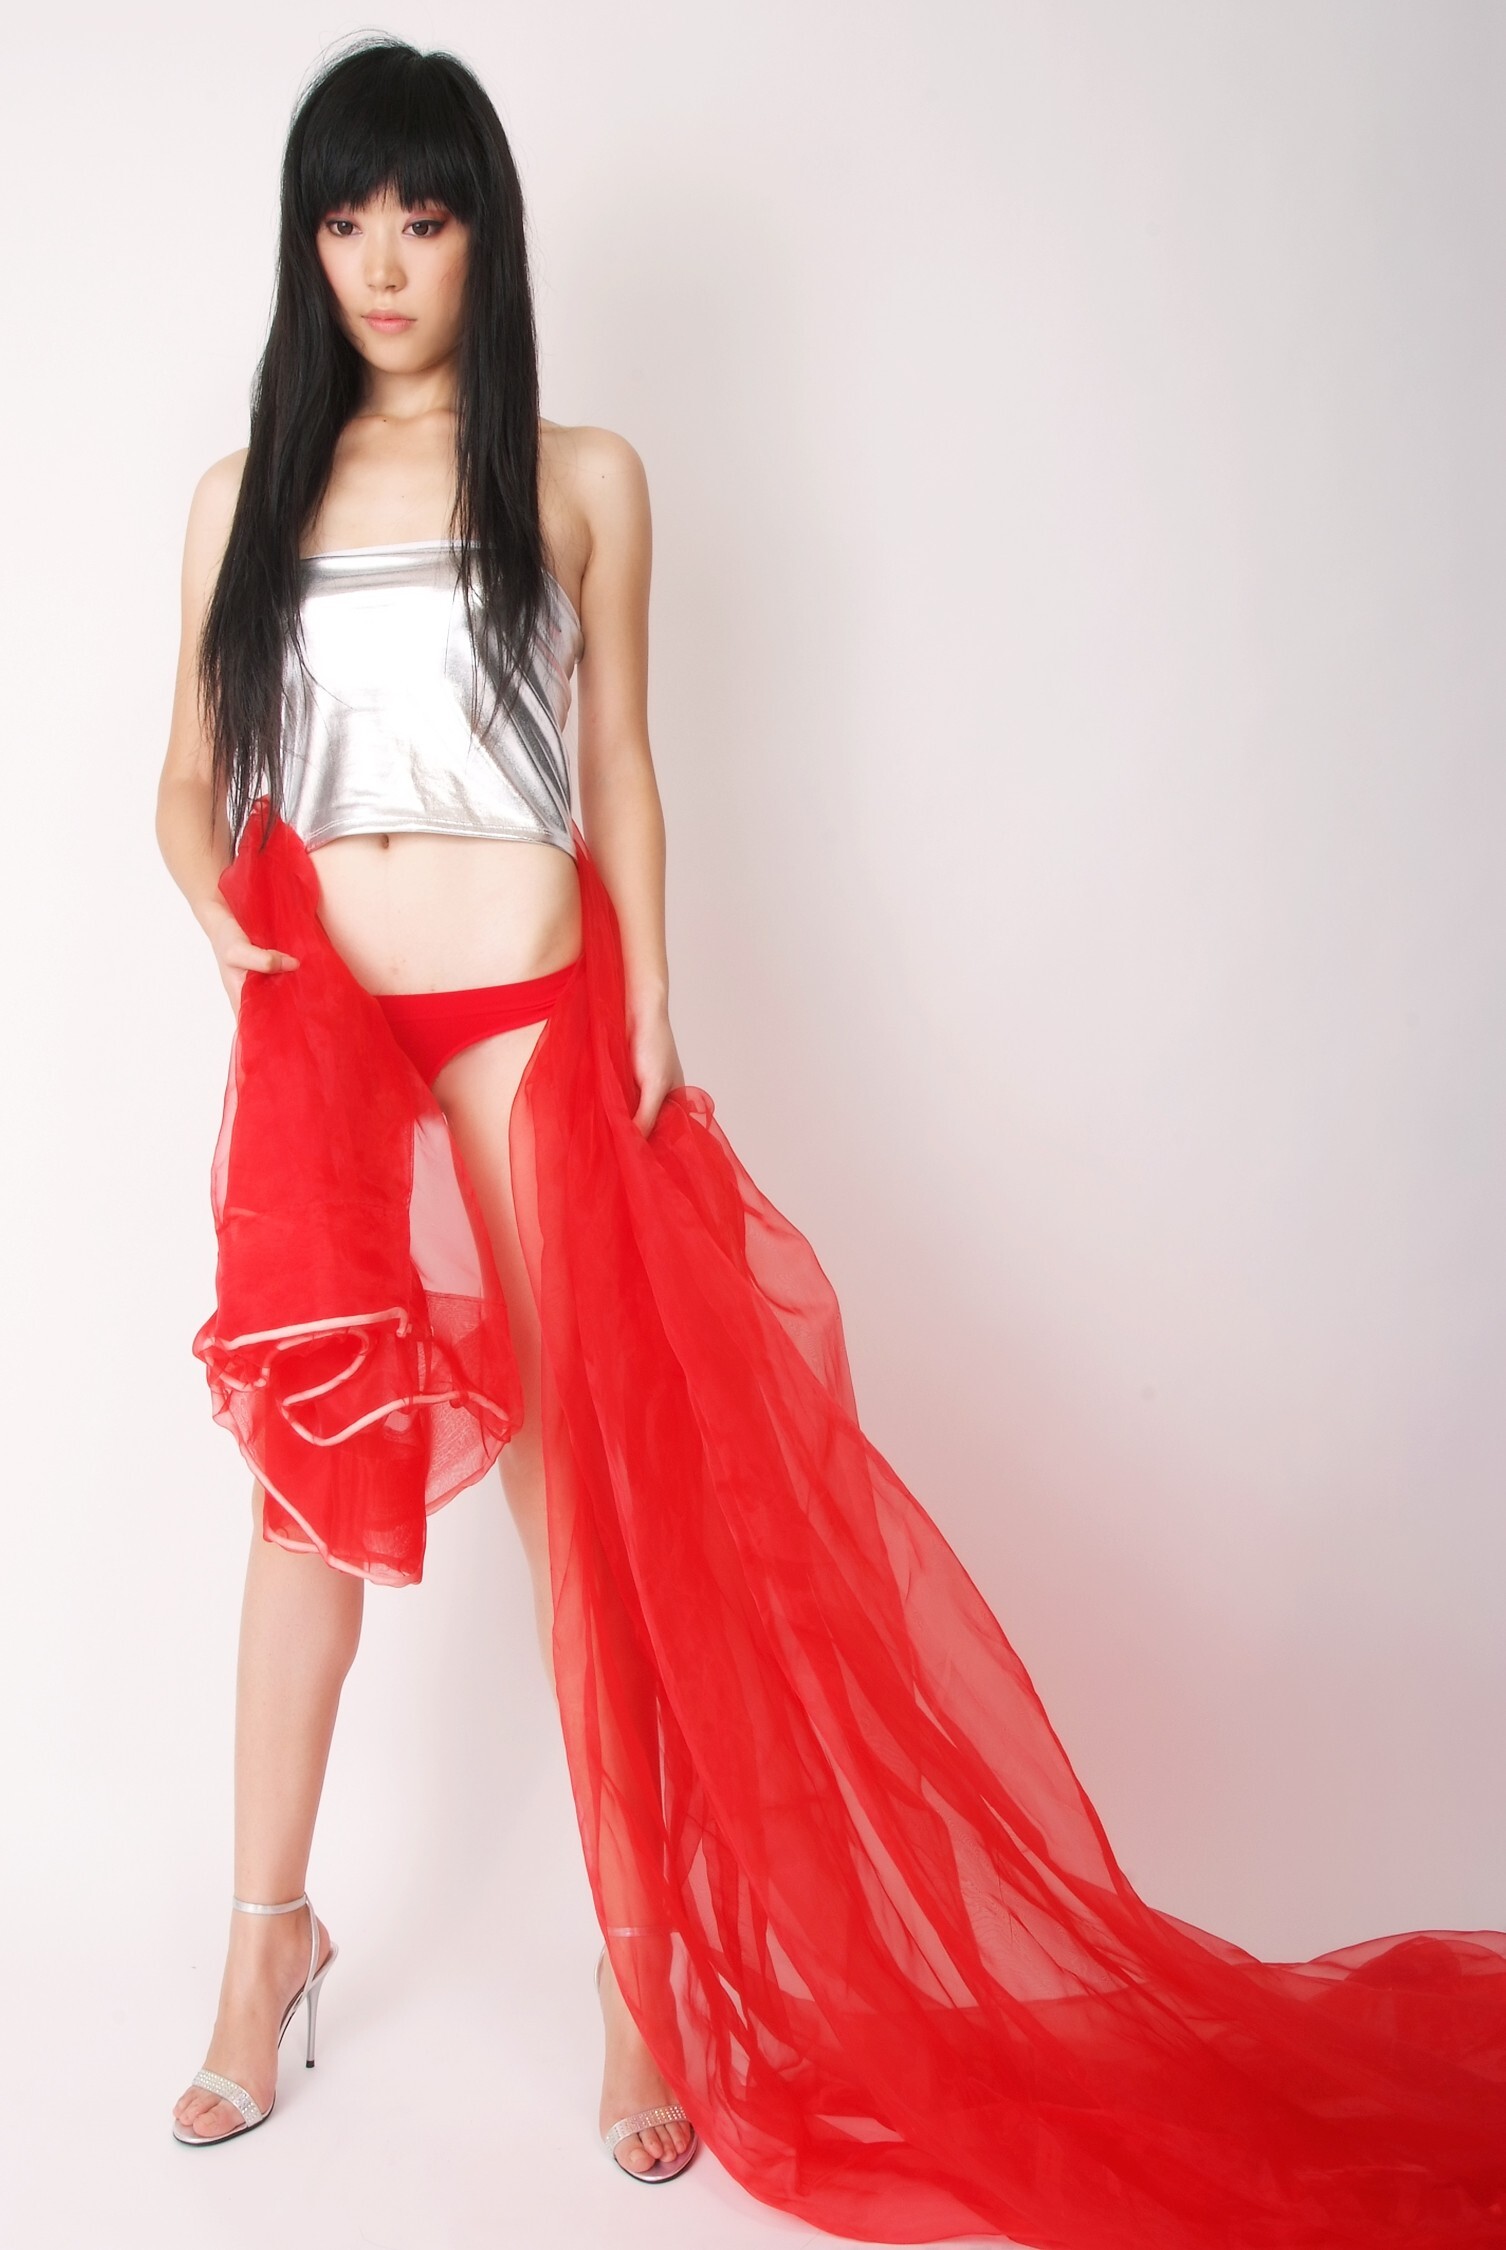 Xiaoqian hot pants beauty Xiaoye jeans hot pants dress An'an racing girl [paimei VIP] domestic beauty